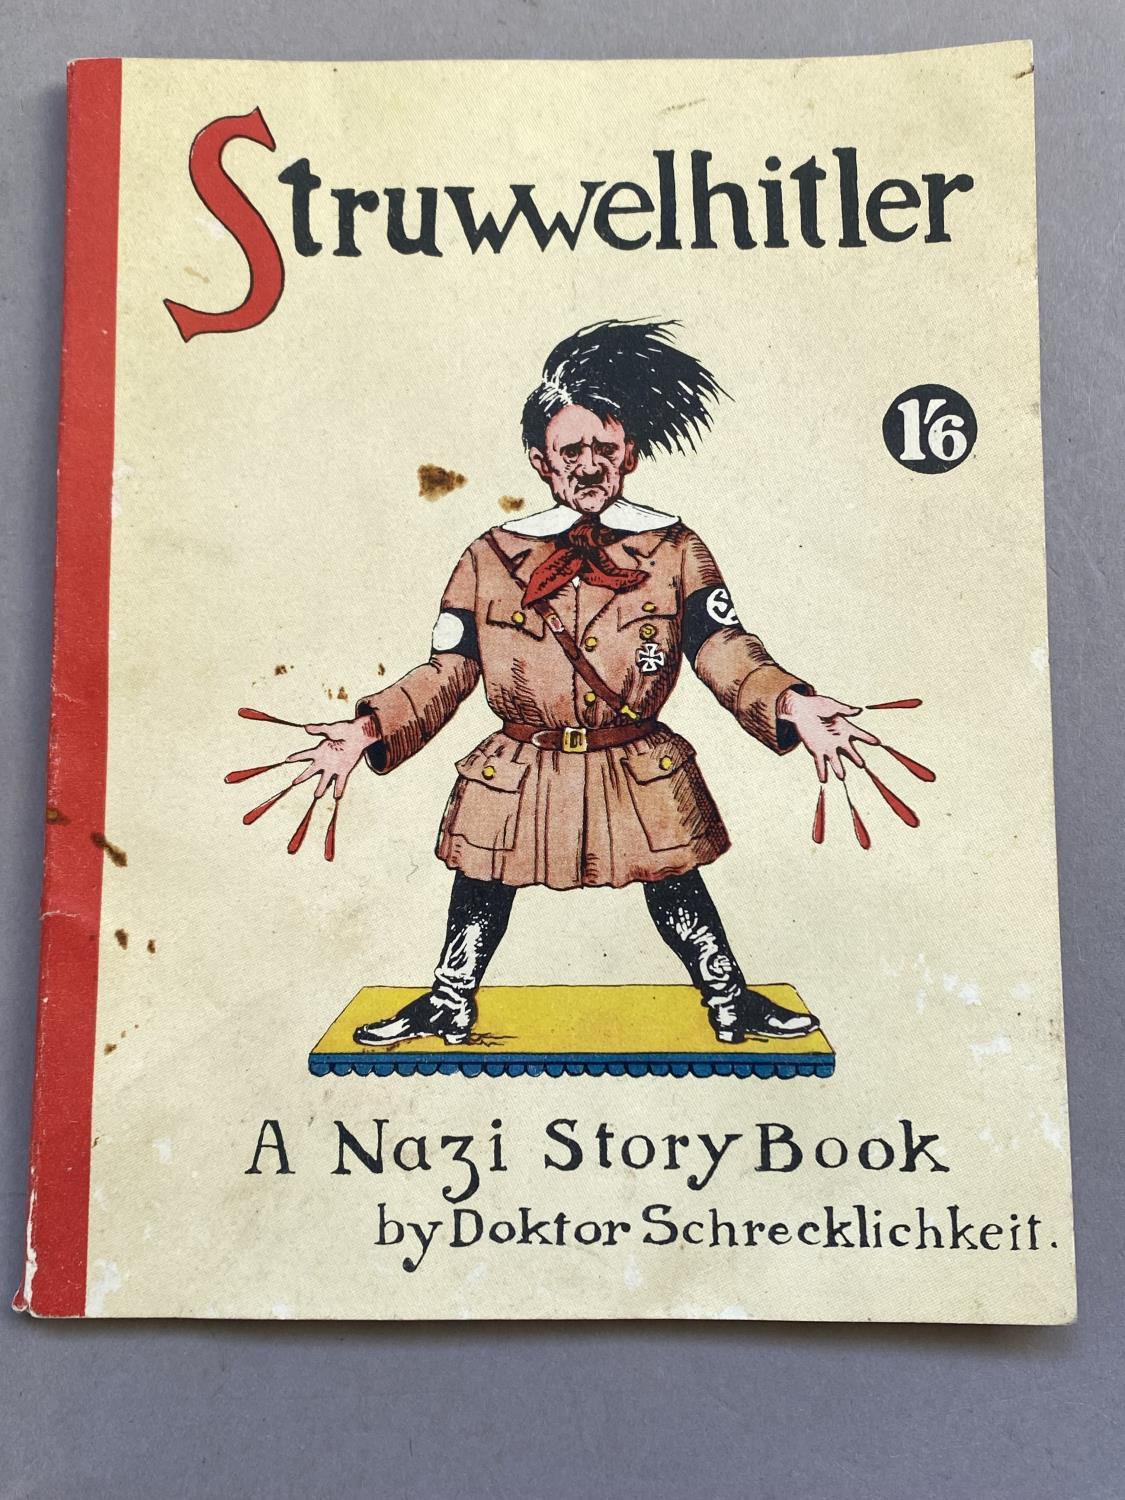 STRUWWLHITLER BY DOKTOR SCHRECKLICHKEIT. A War relief fund book 'Struwwelpeter being a parody on the